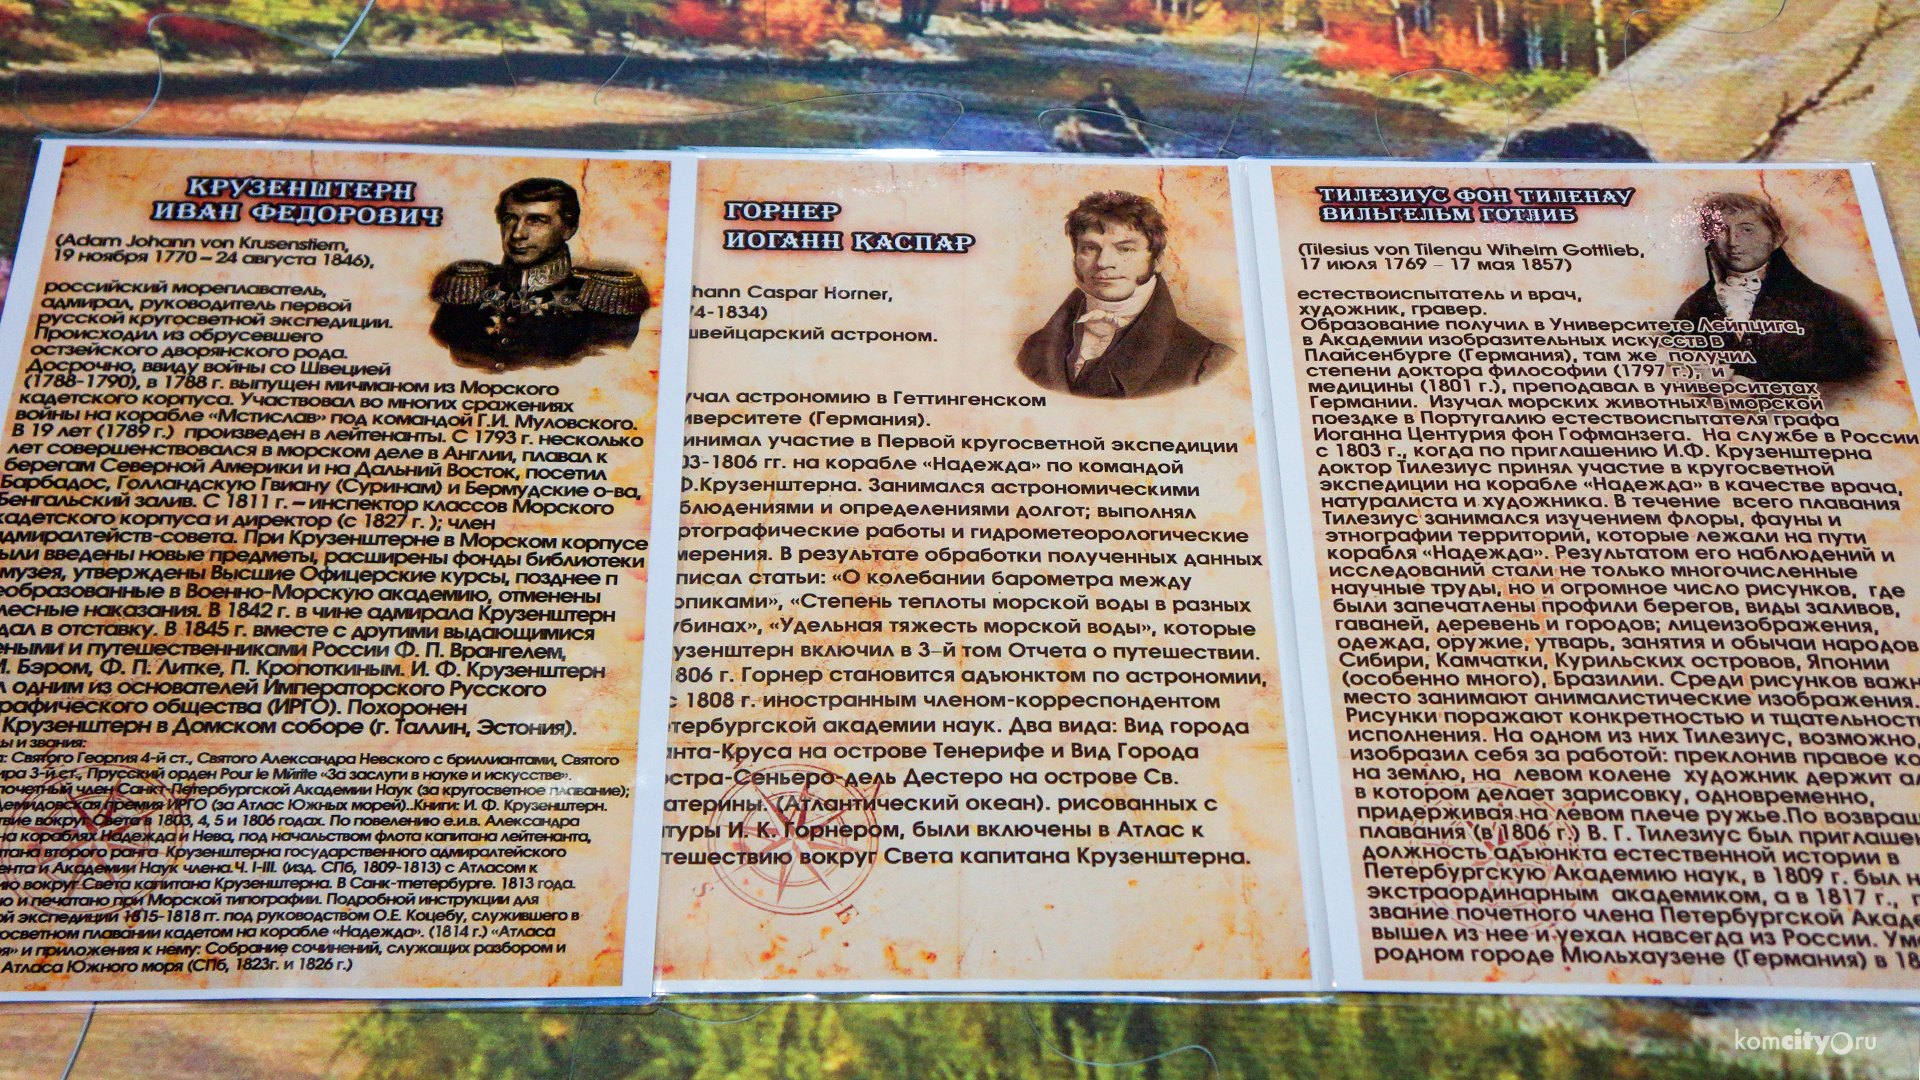 Виртуальное путешествие с капитаном Крузенштерном можно совершить в Комсомольском-на-Амуре Краеведческом музее 